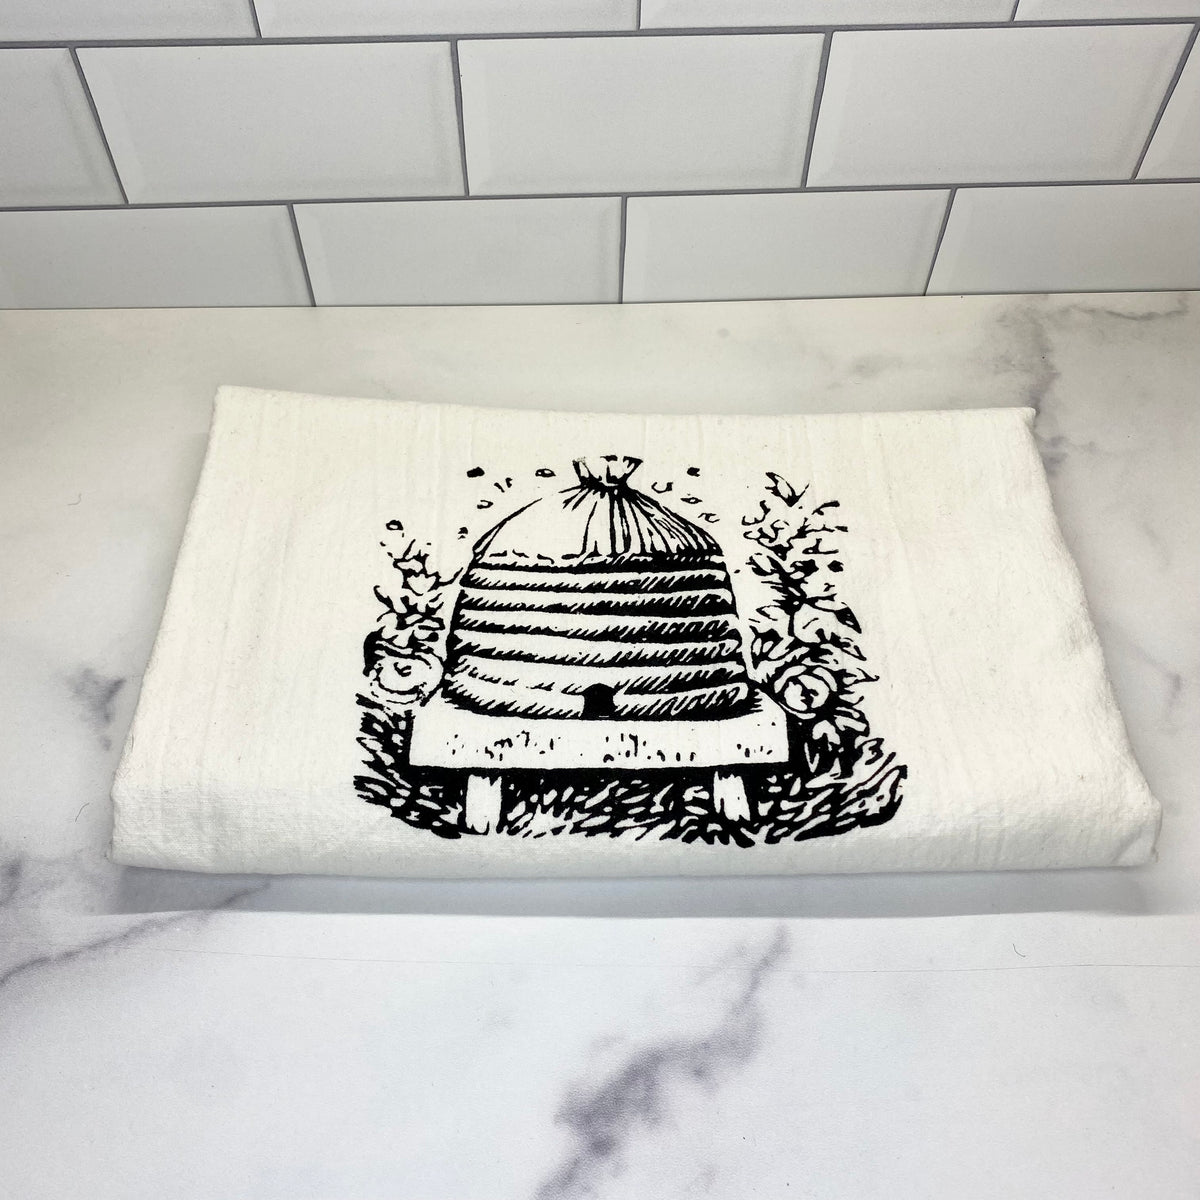 Honey Bee Tea Towel - Green Bee Tea Towels